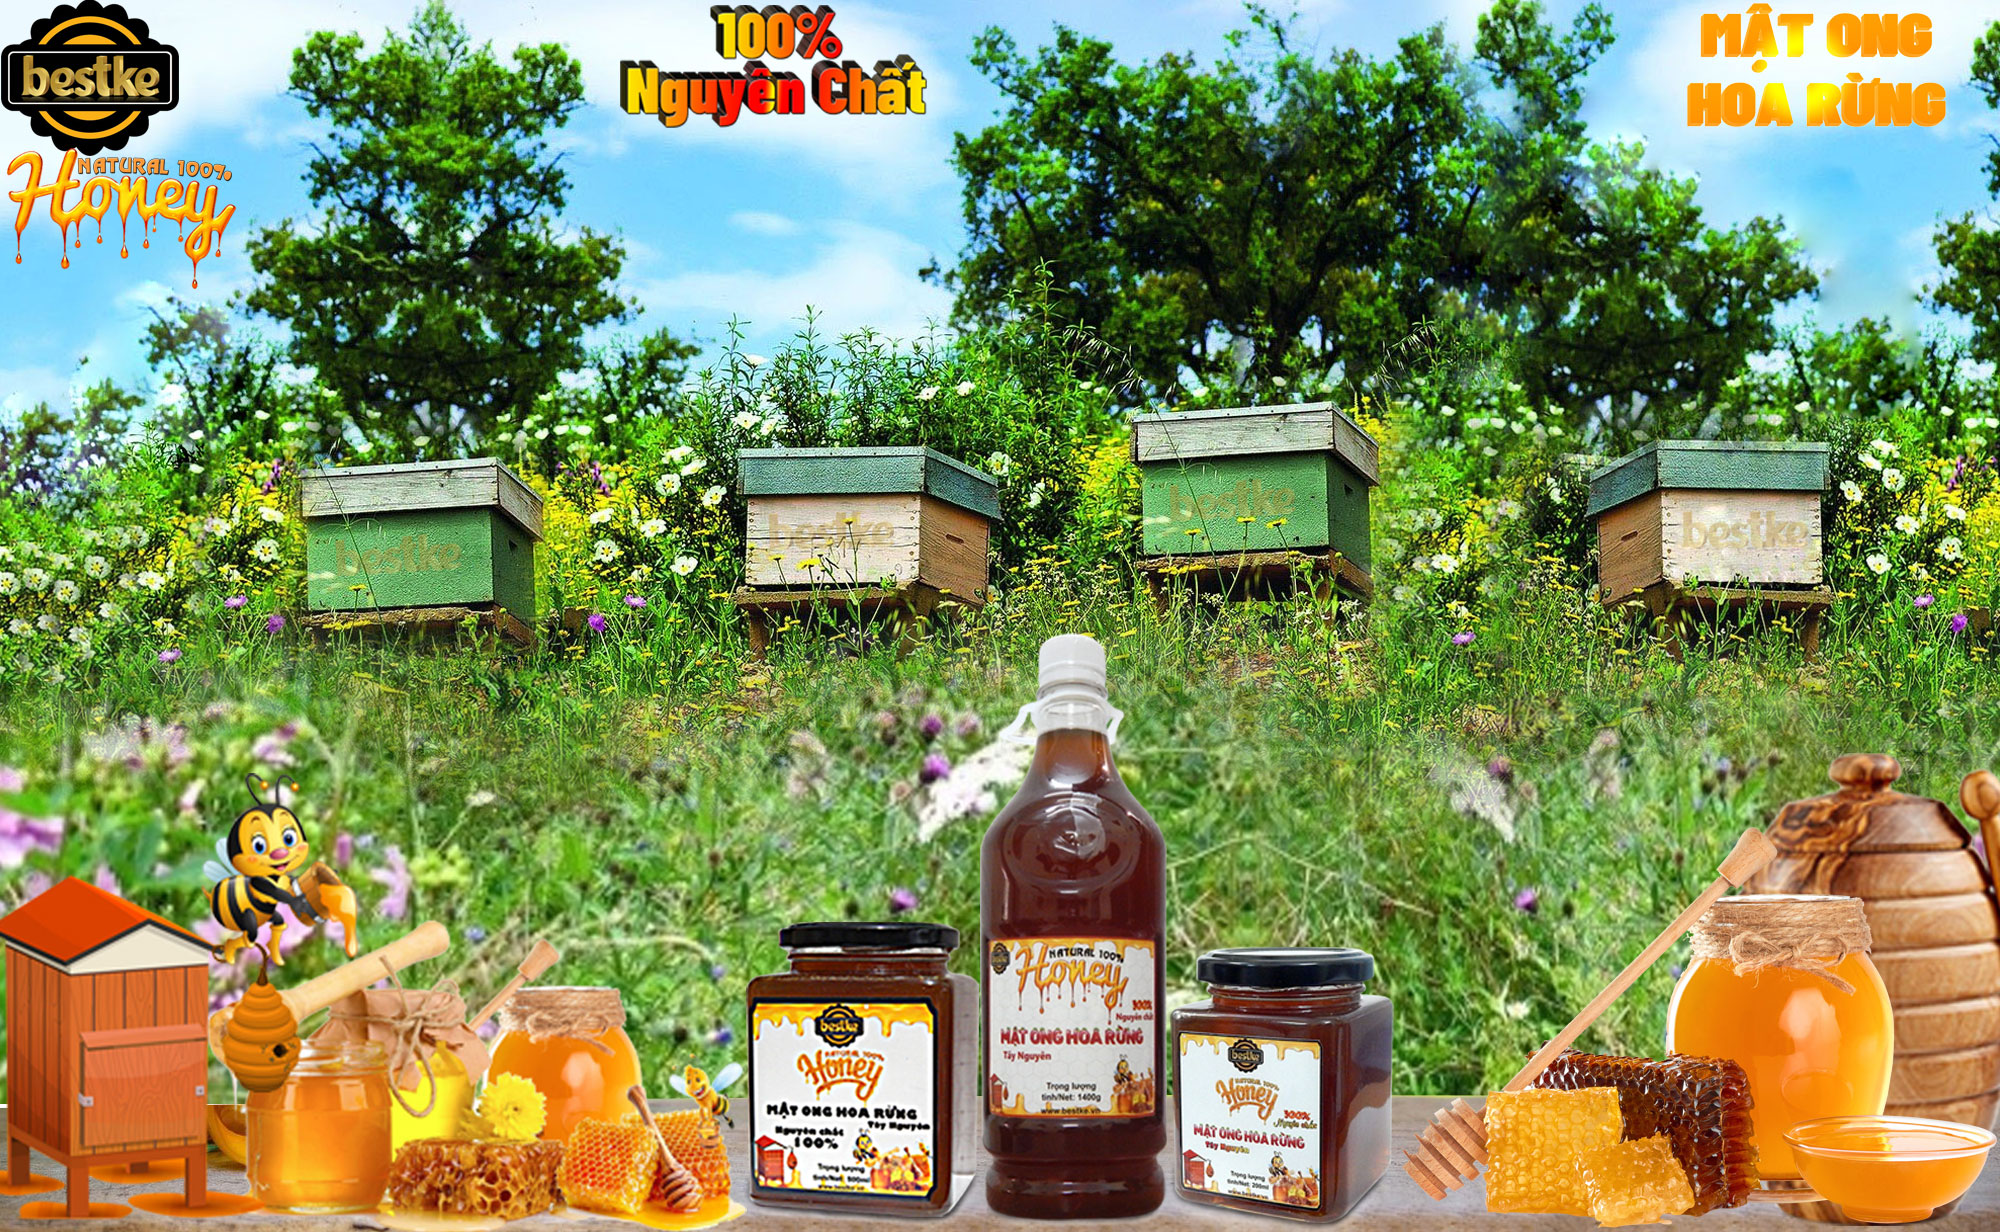 mật ong hoa rừng tây nguyên 100% nguyên chất, cam kết không gmo 3